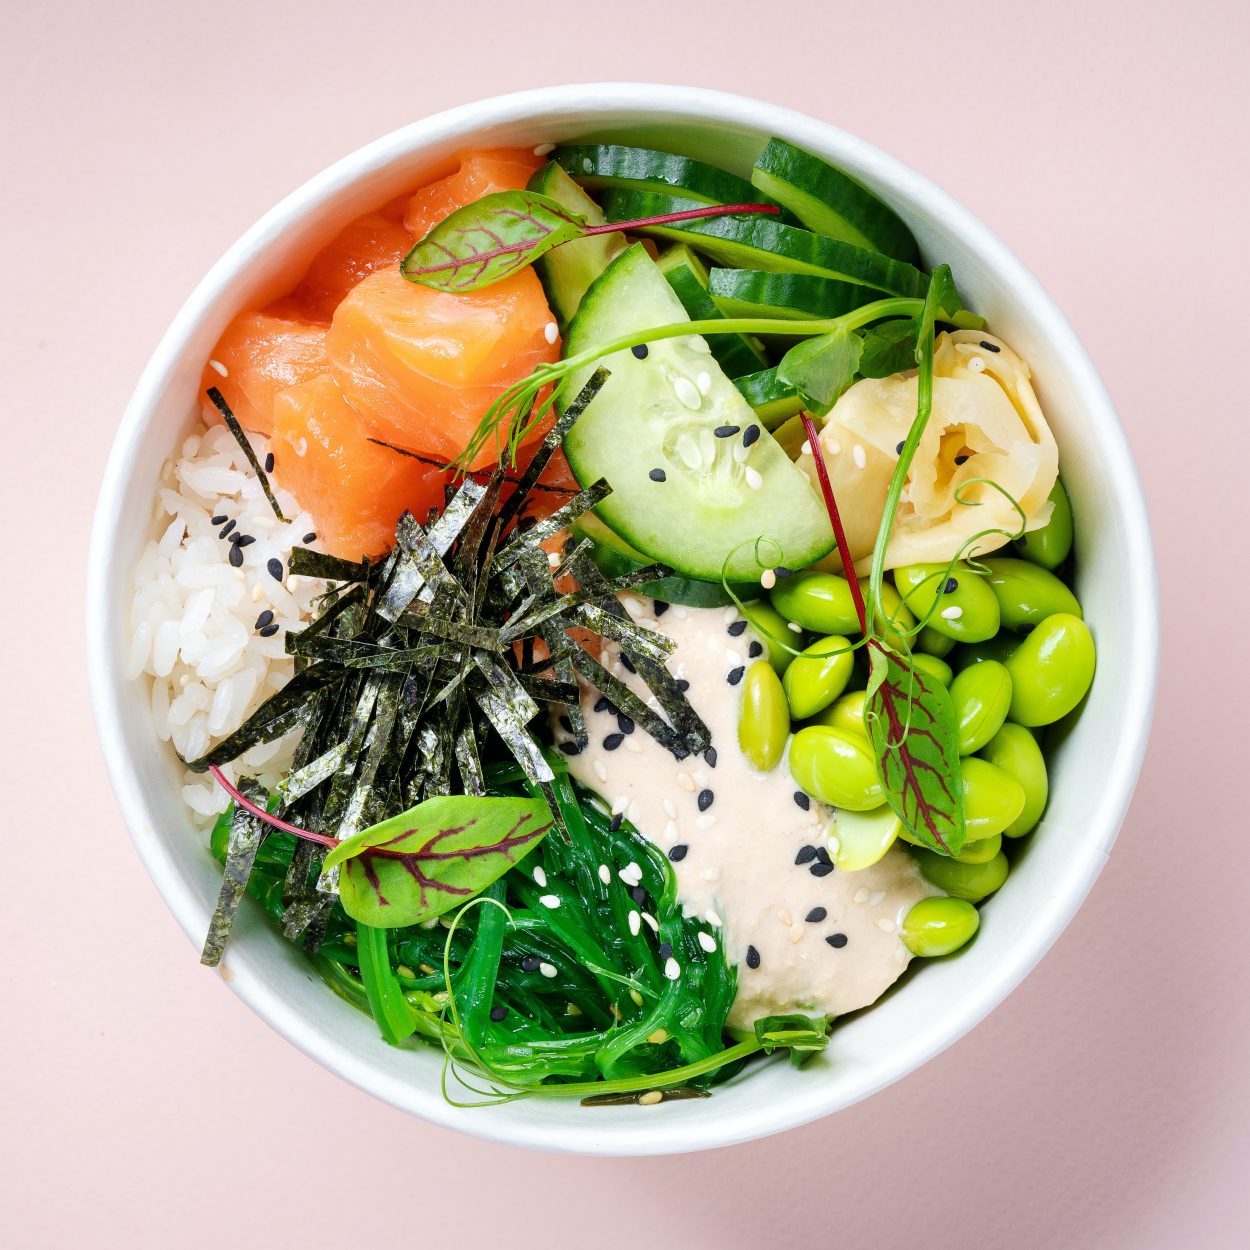 Una imagen de un bol de arroz con verduras encima.